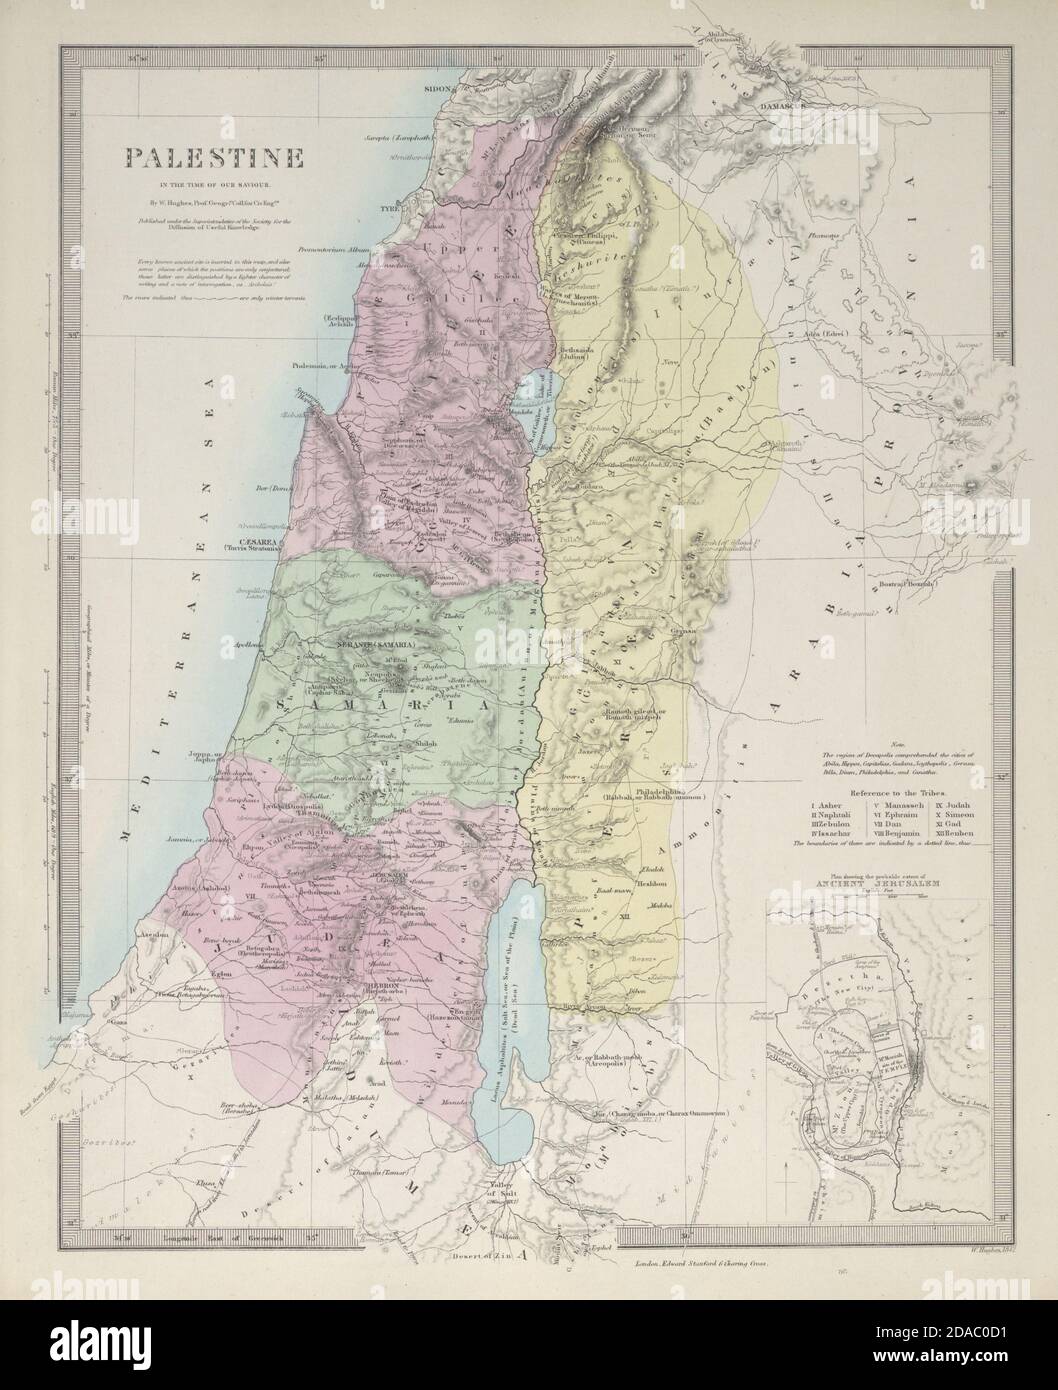 LA PALESTINE à l'époque de notre Sauveur. Jérusalem antique. Israël. Carte SDUK 1857 Banque D'Images